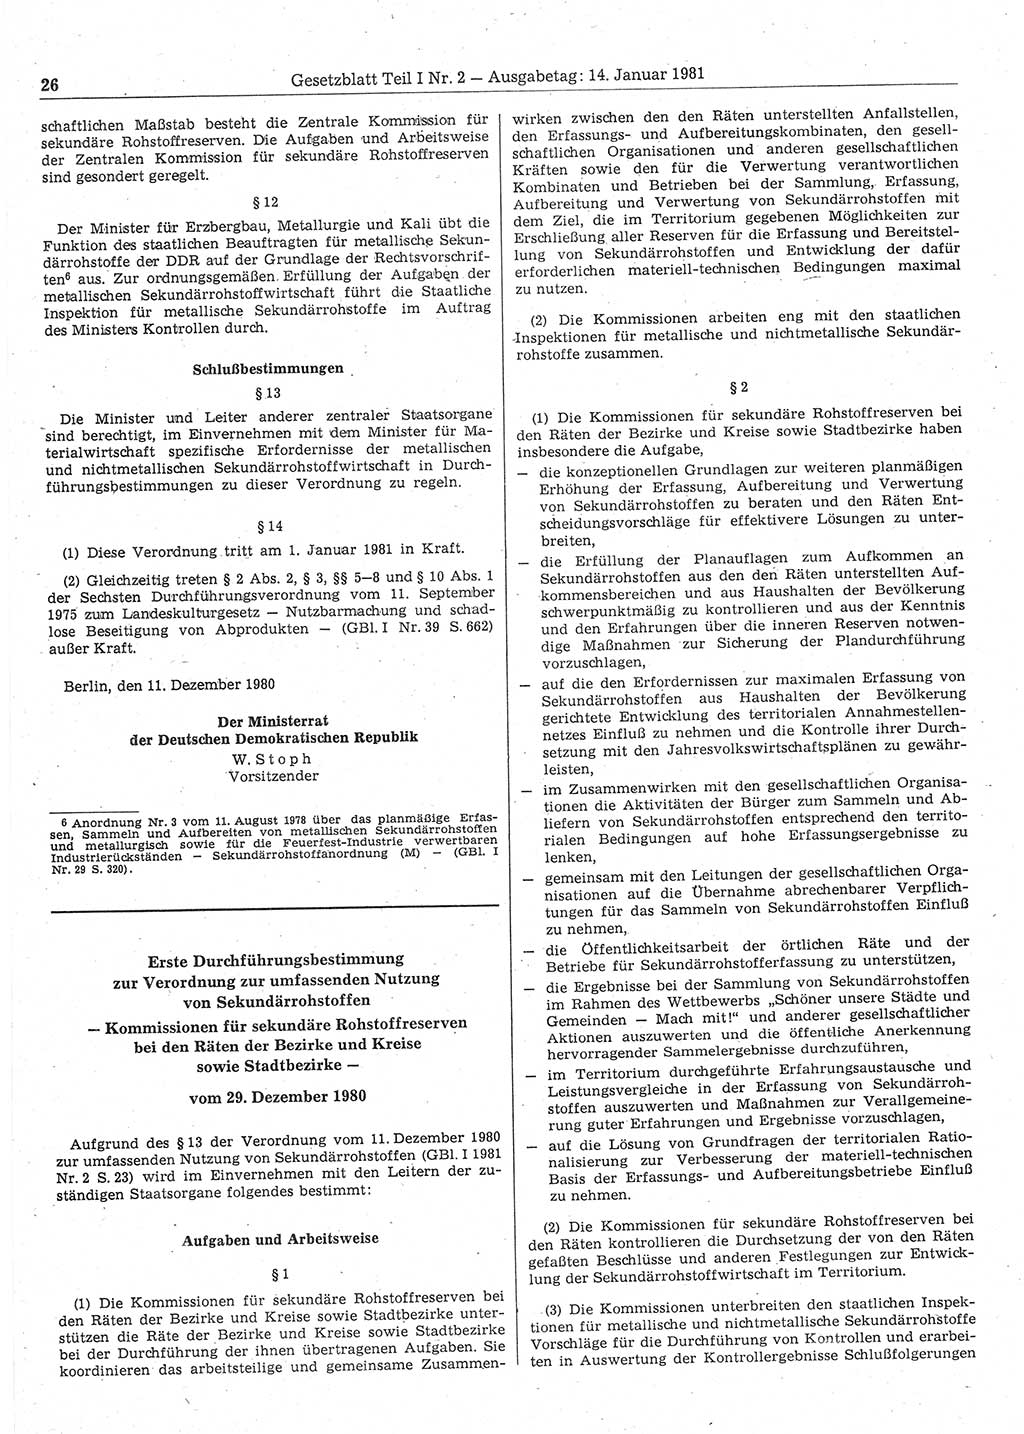 Gesetzblatt (GBl.) der Deutschen Demokratischen Republik (DDR) Teil Ⅰ 1981, Seite 26 (GBl. DDR Ⅰ 1981, S. 26)